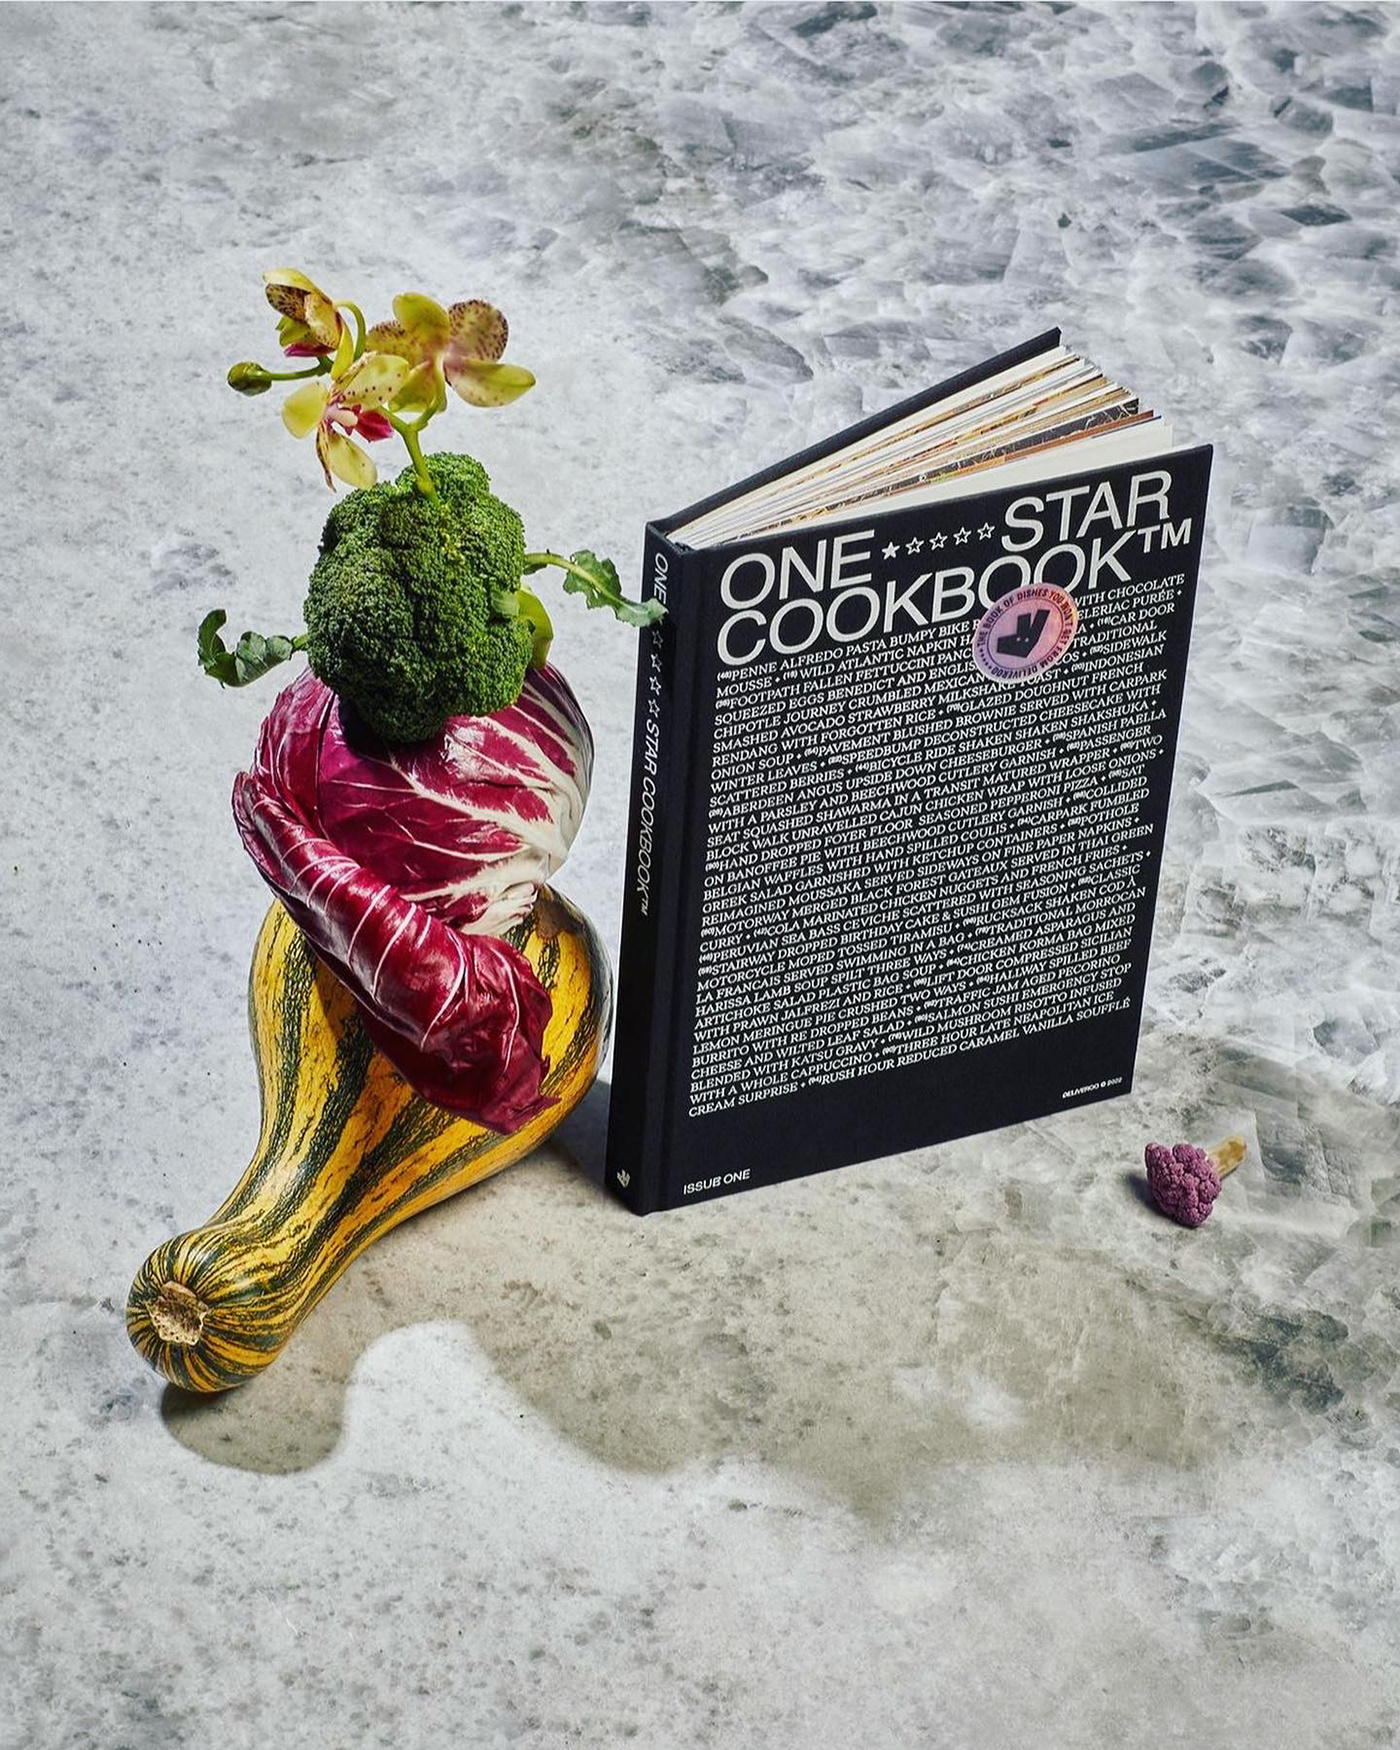 1 star cookbook